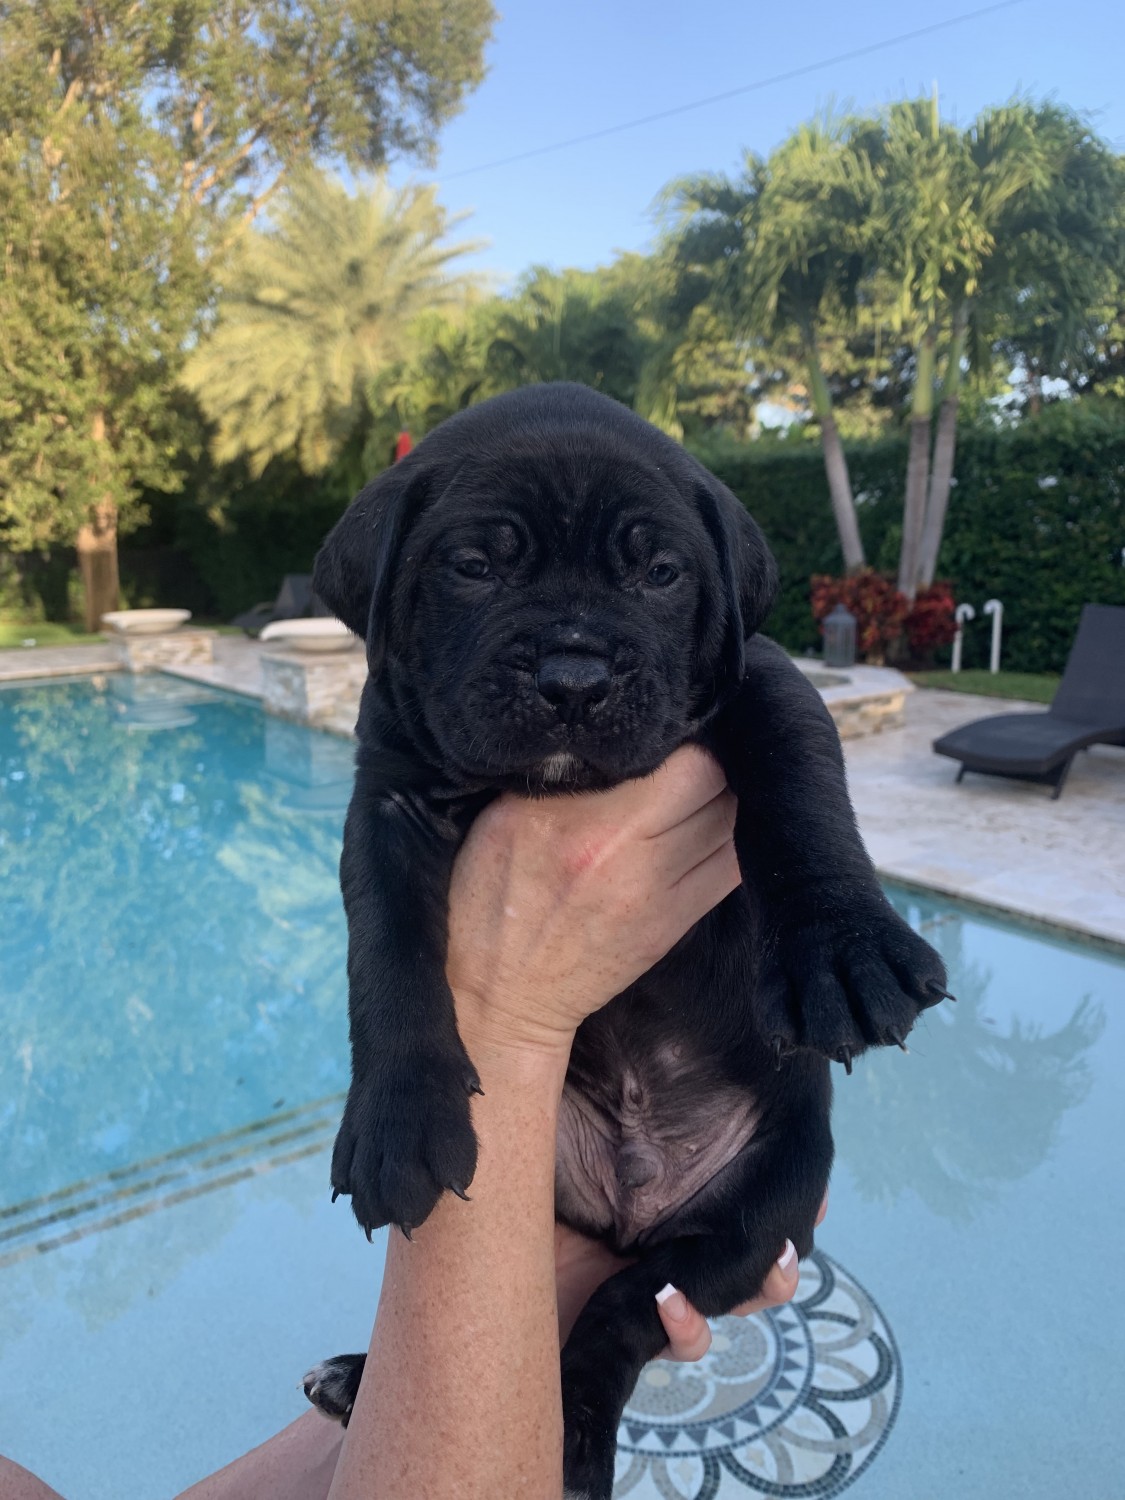 Cane Corso Puppies For Sale Miami, FL 308992 Petzlover